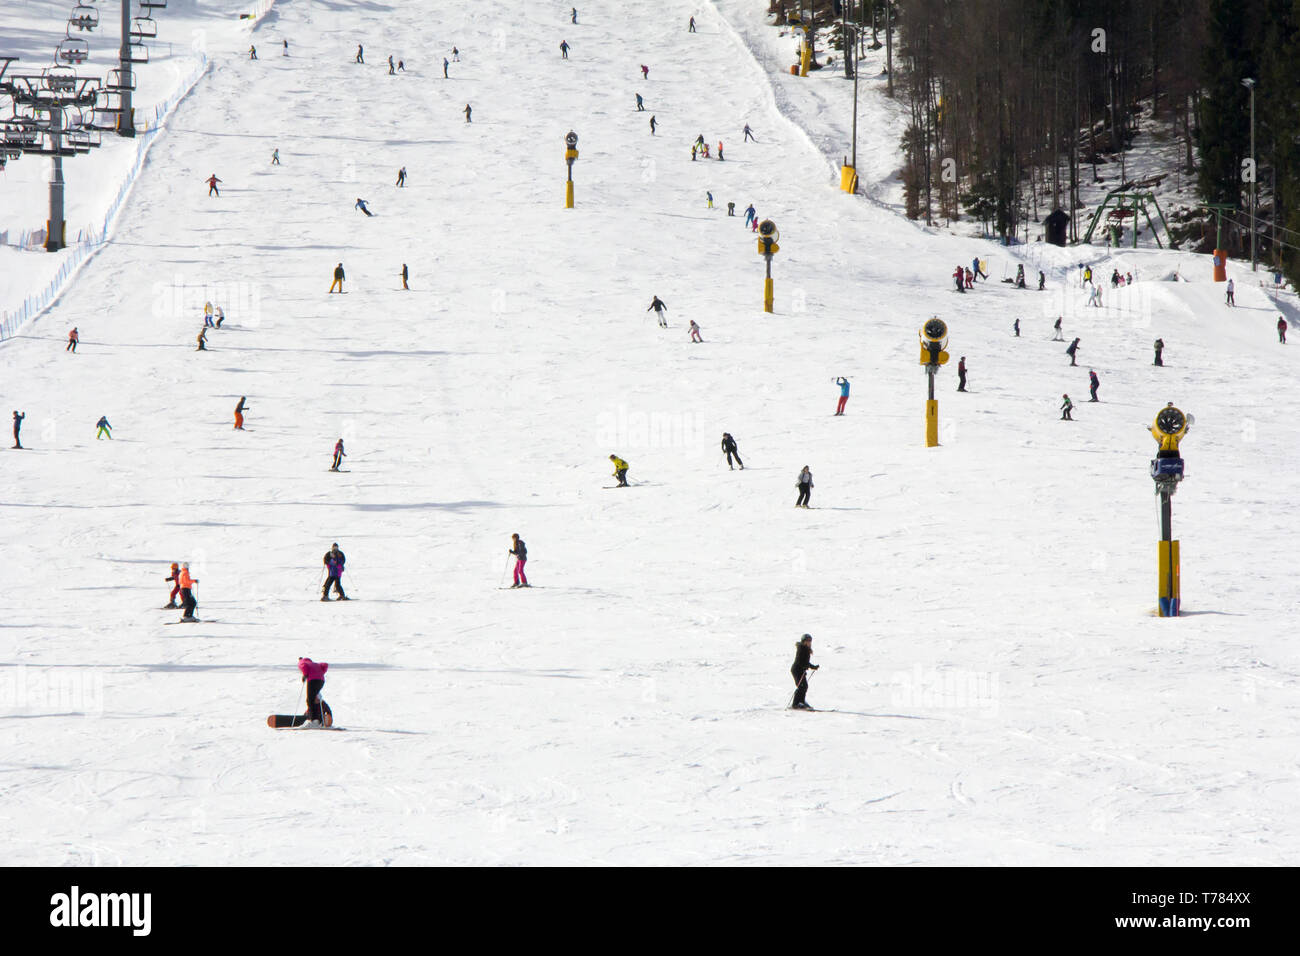 Beaucoup de skieurs et planchistes sur la pente à ski resort Banque D'Images